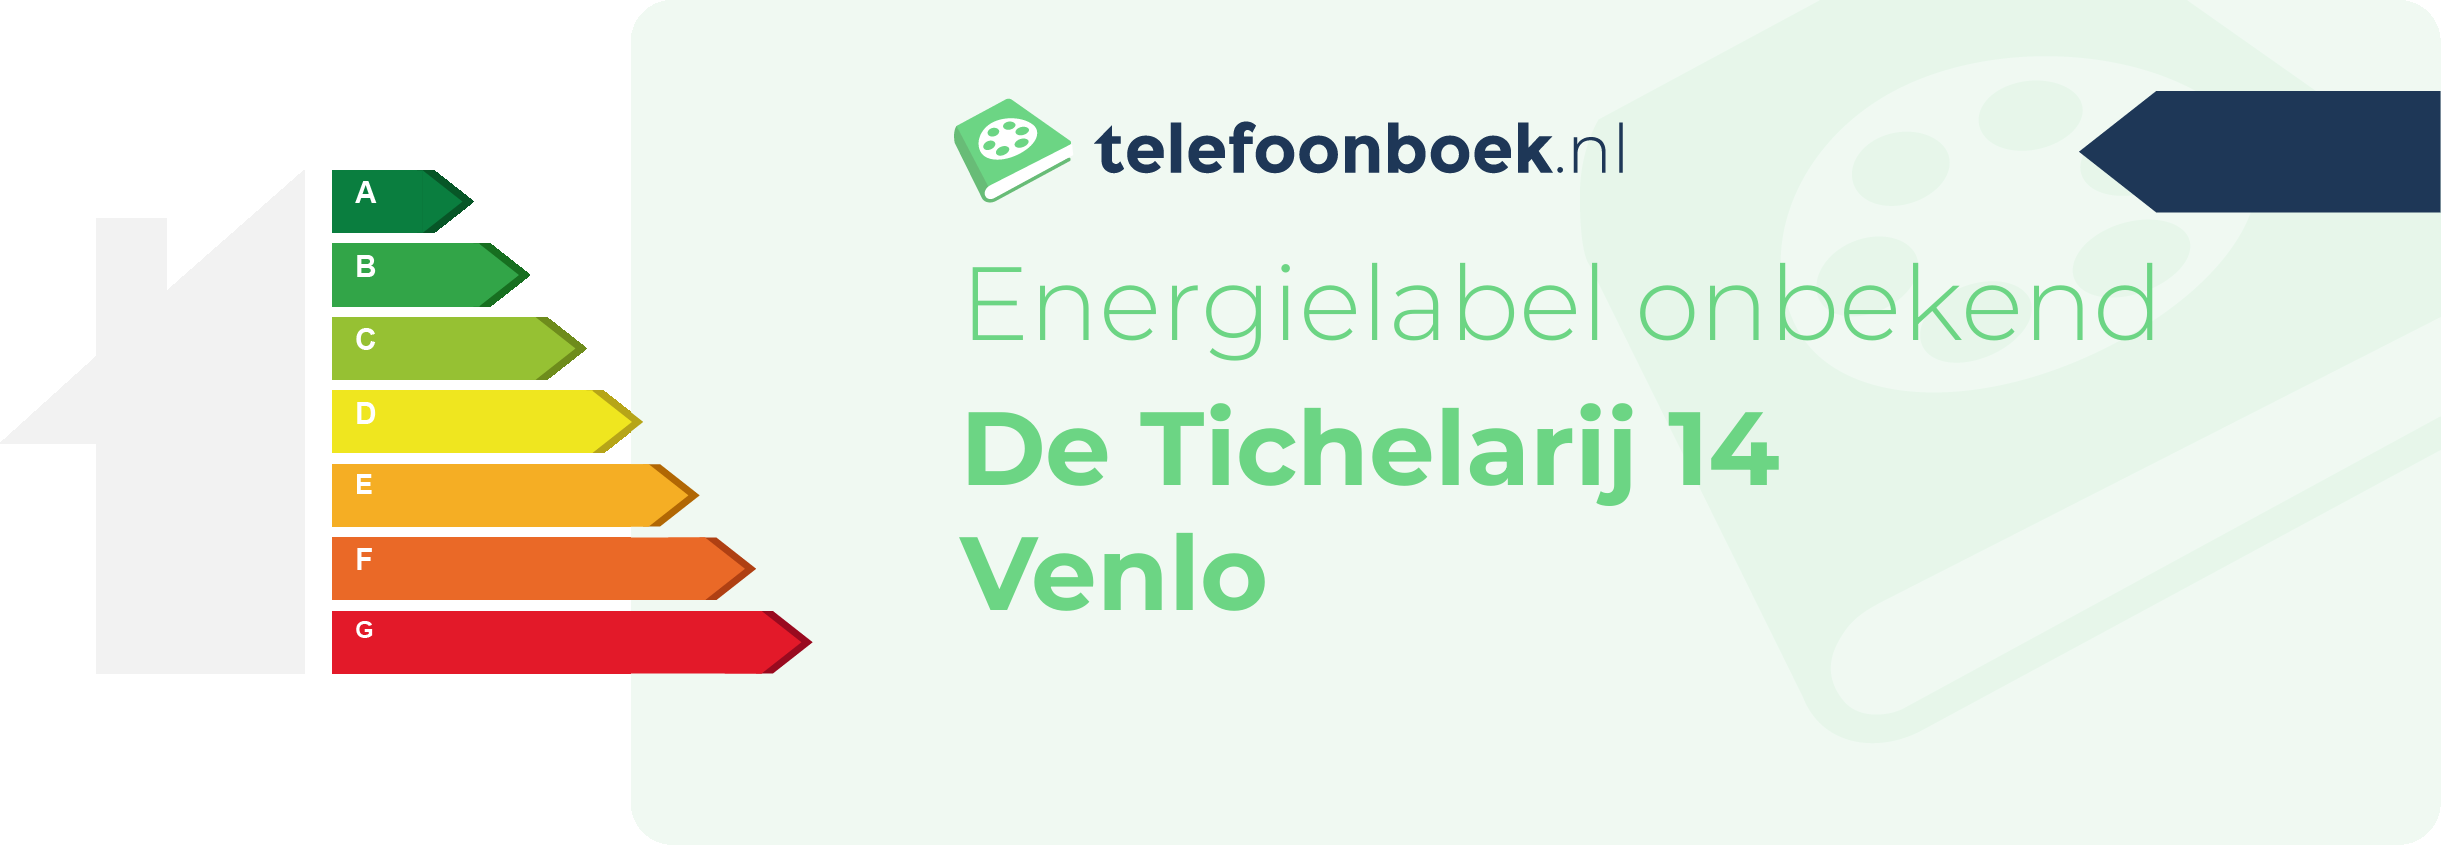 Energielabel De Tichelarij 14 Venlo